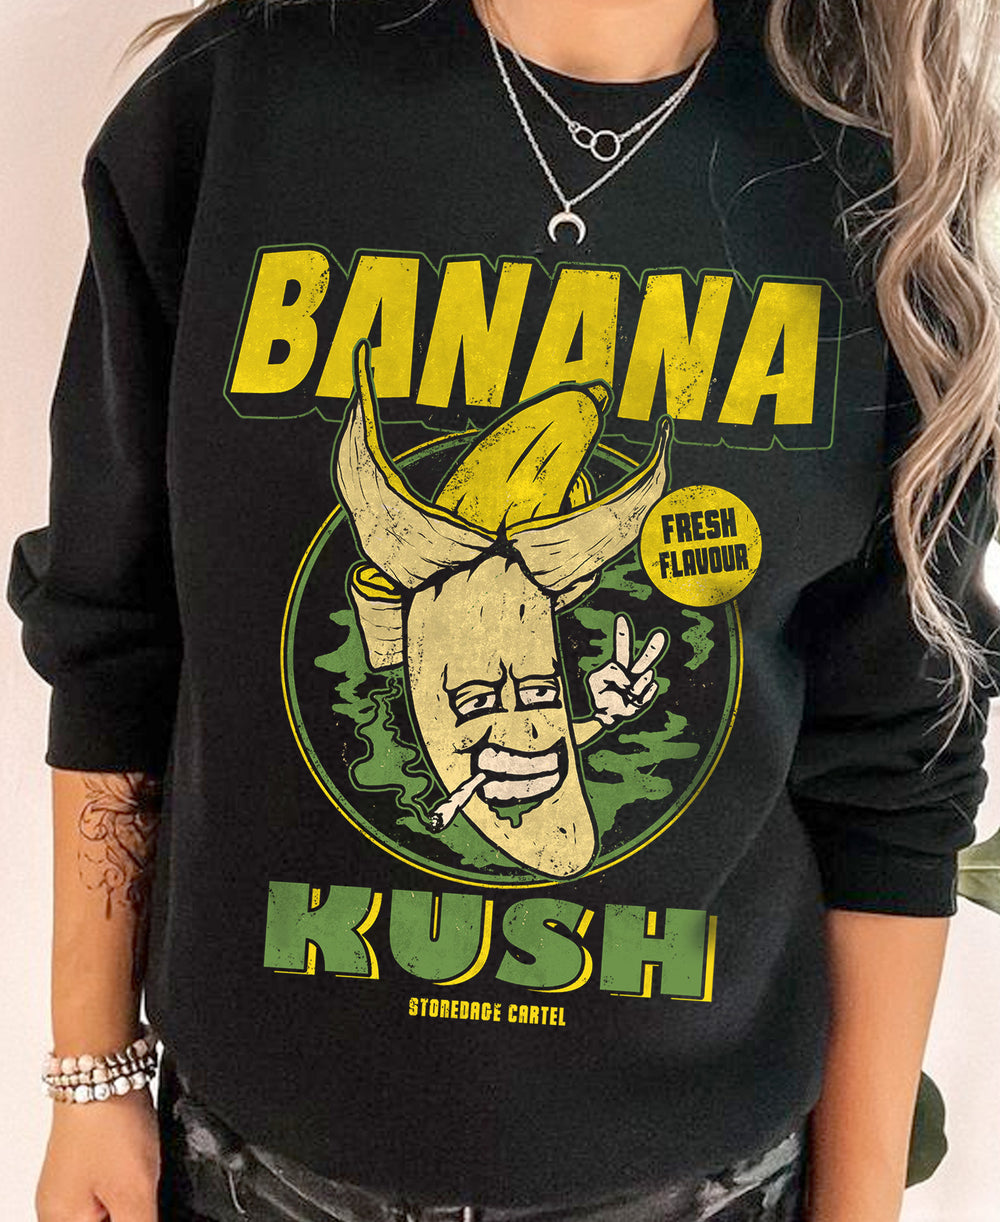 Banana Kush Unisex Sweatshirt, 420 Clothing Pealed Banana smoking weed funny unisex sweatshirt model